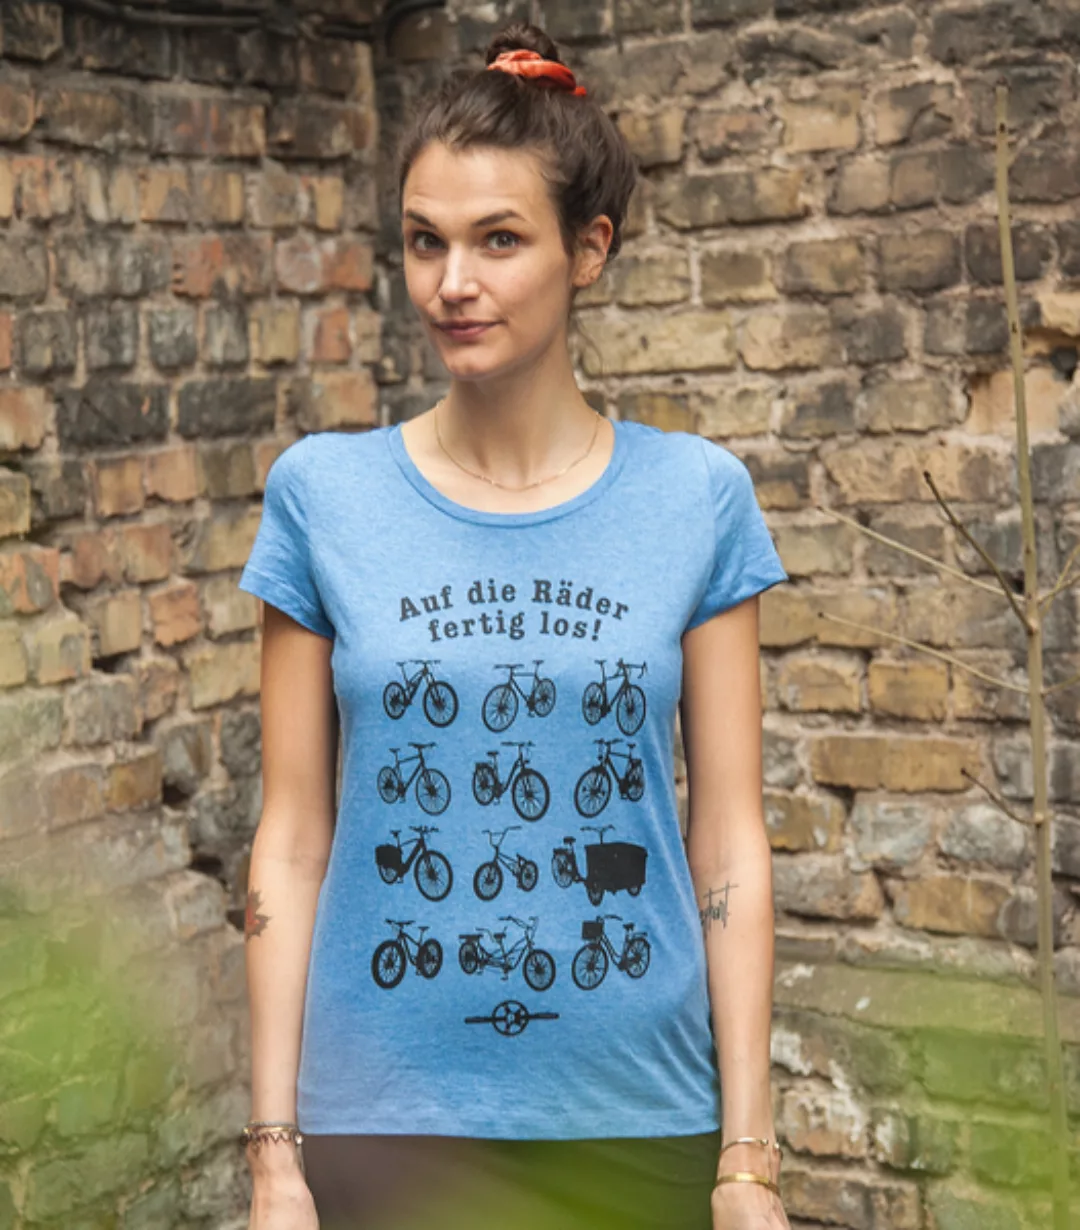 Päfjes - Auf Die Räder Fertig Los! - Fair Wear Frauen T-shirt günstig online kaufen